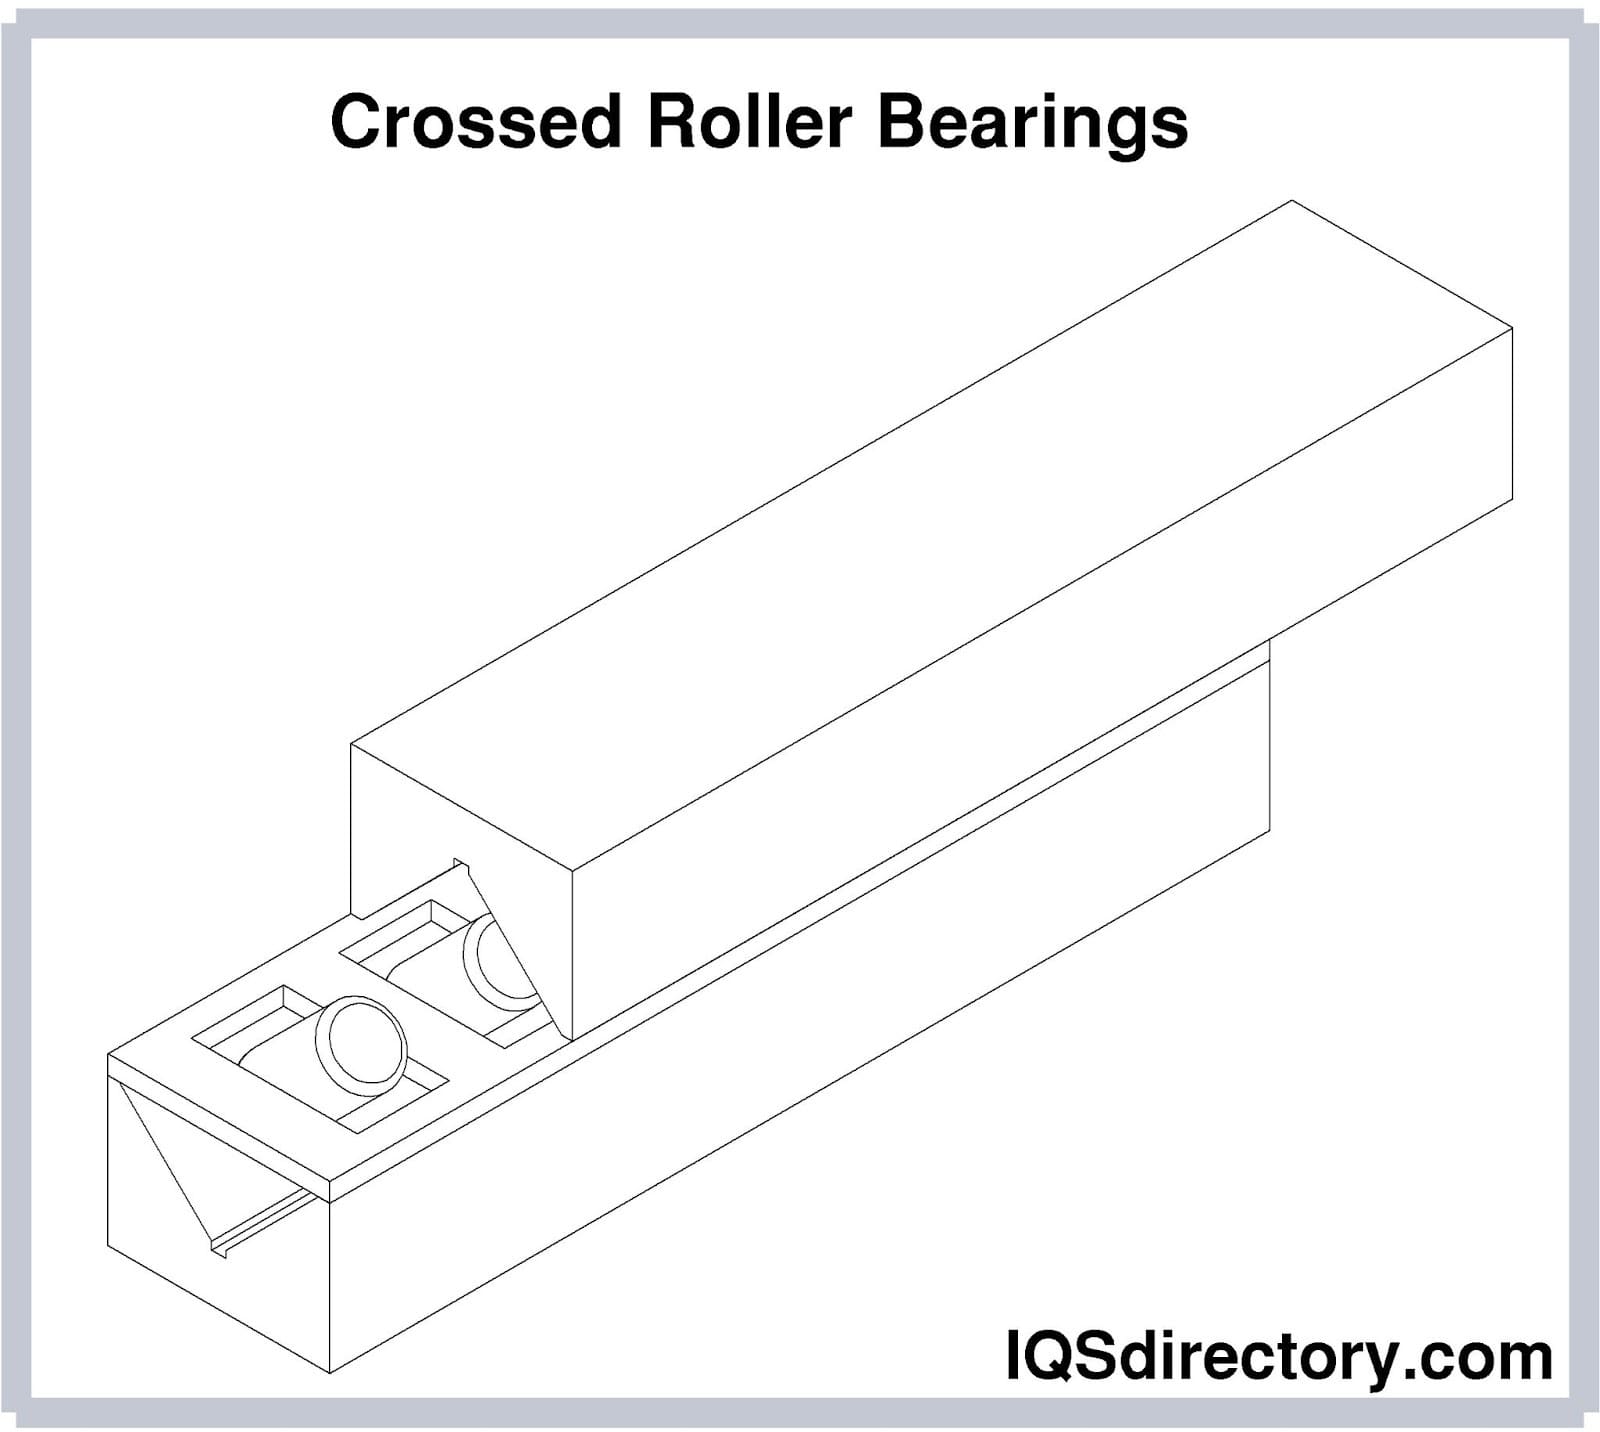 Crossed Roller Bearings